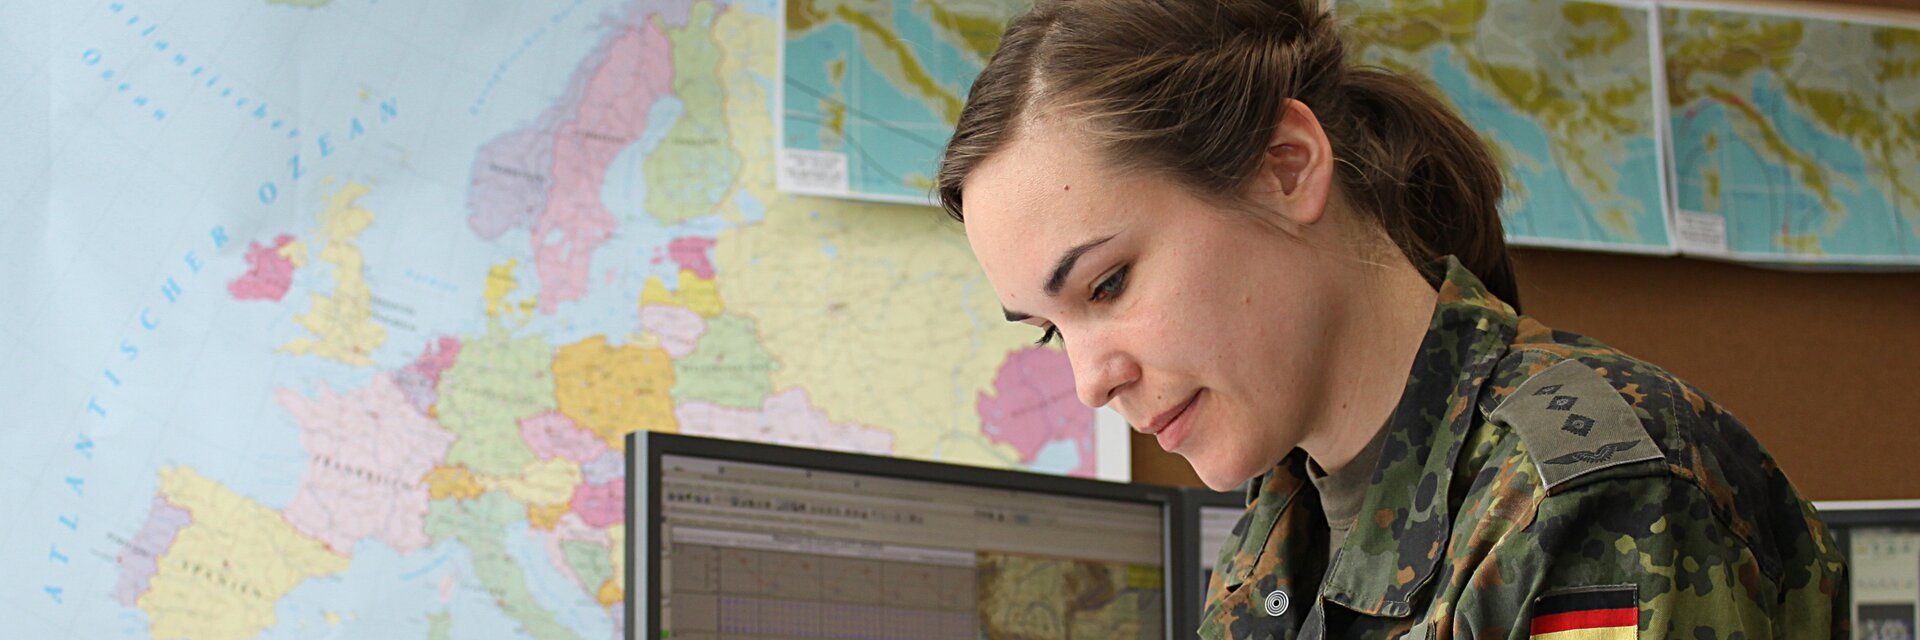 Eine Soldatin sitzt am Schreibtisch und zeichnet etwas auf einer Karte ein